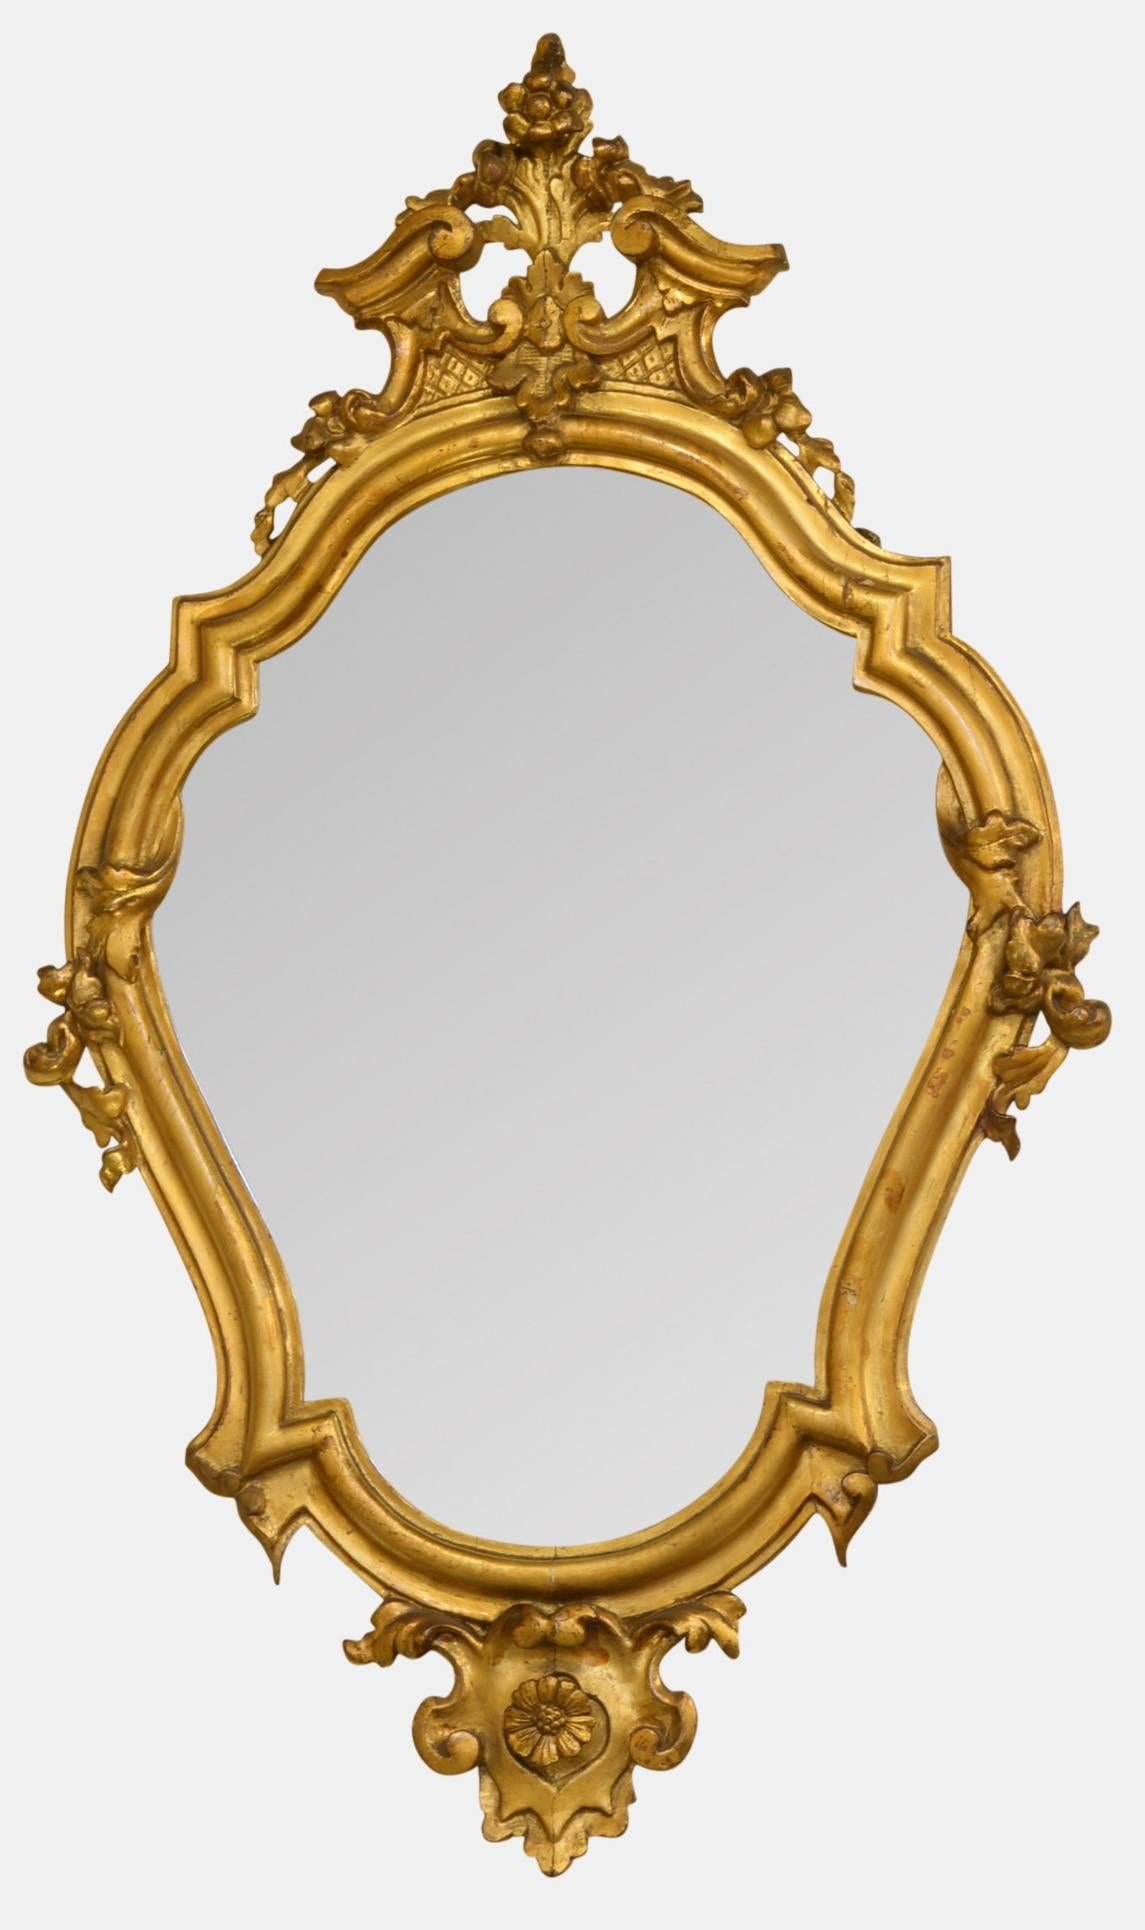 A pair of Italian early 19th century shaped, gilded girandole mirrors.